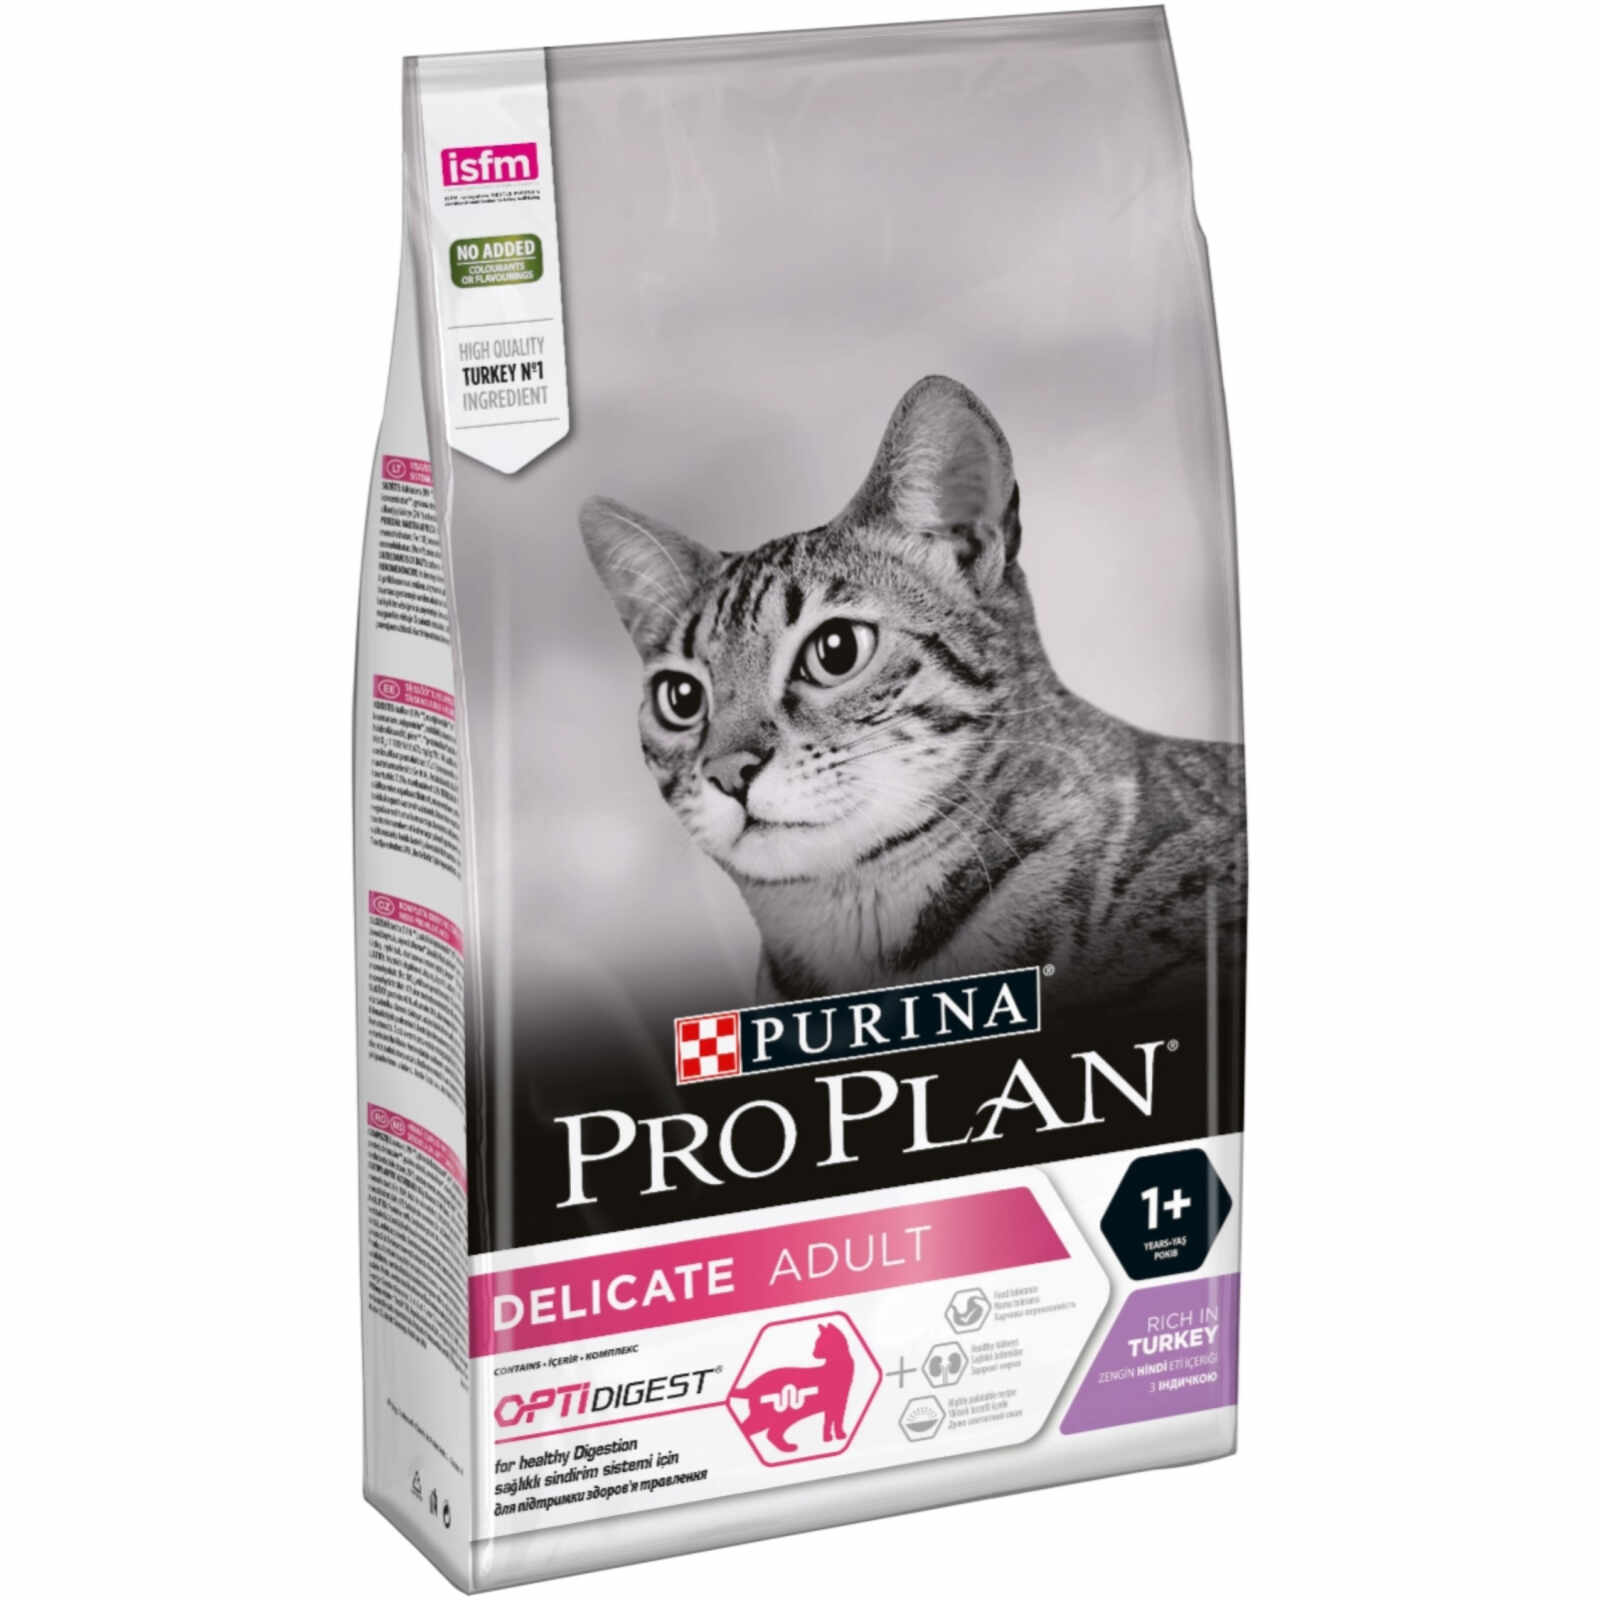 Purina Pro Plan Pisici Optidigest, Delicate Adult cu Curcan, 1.5 kg